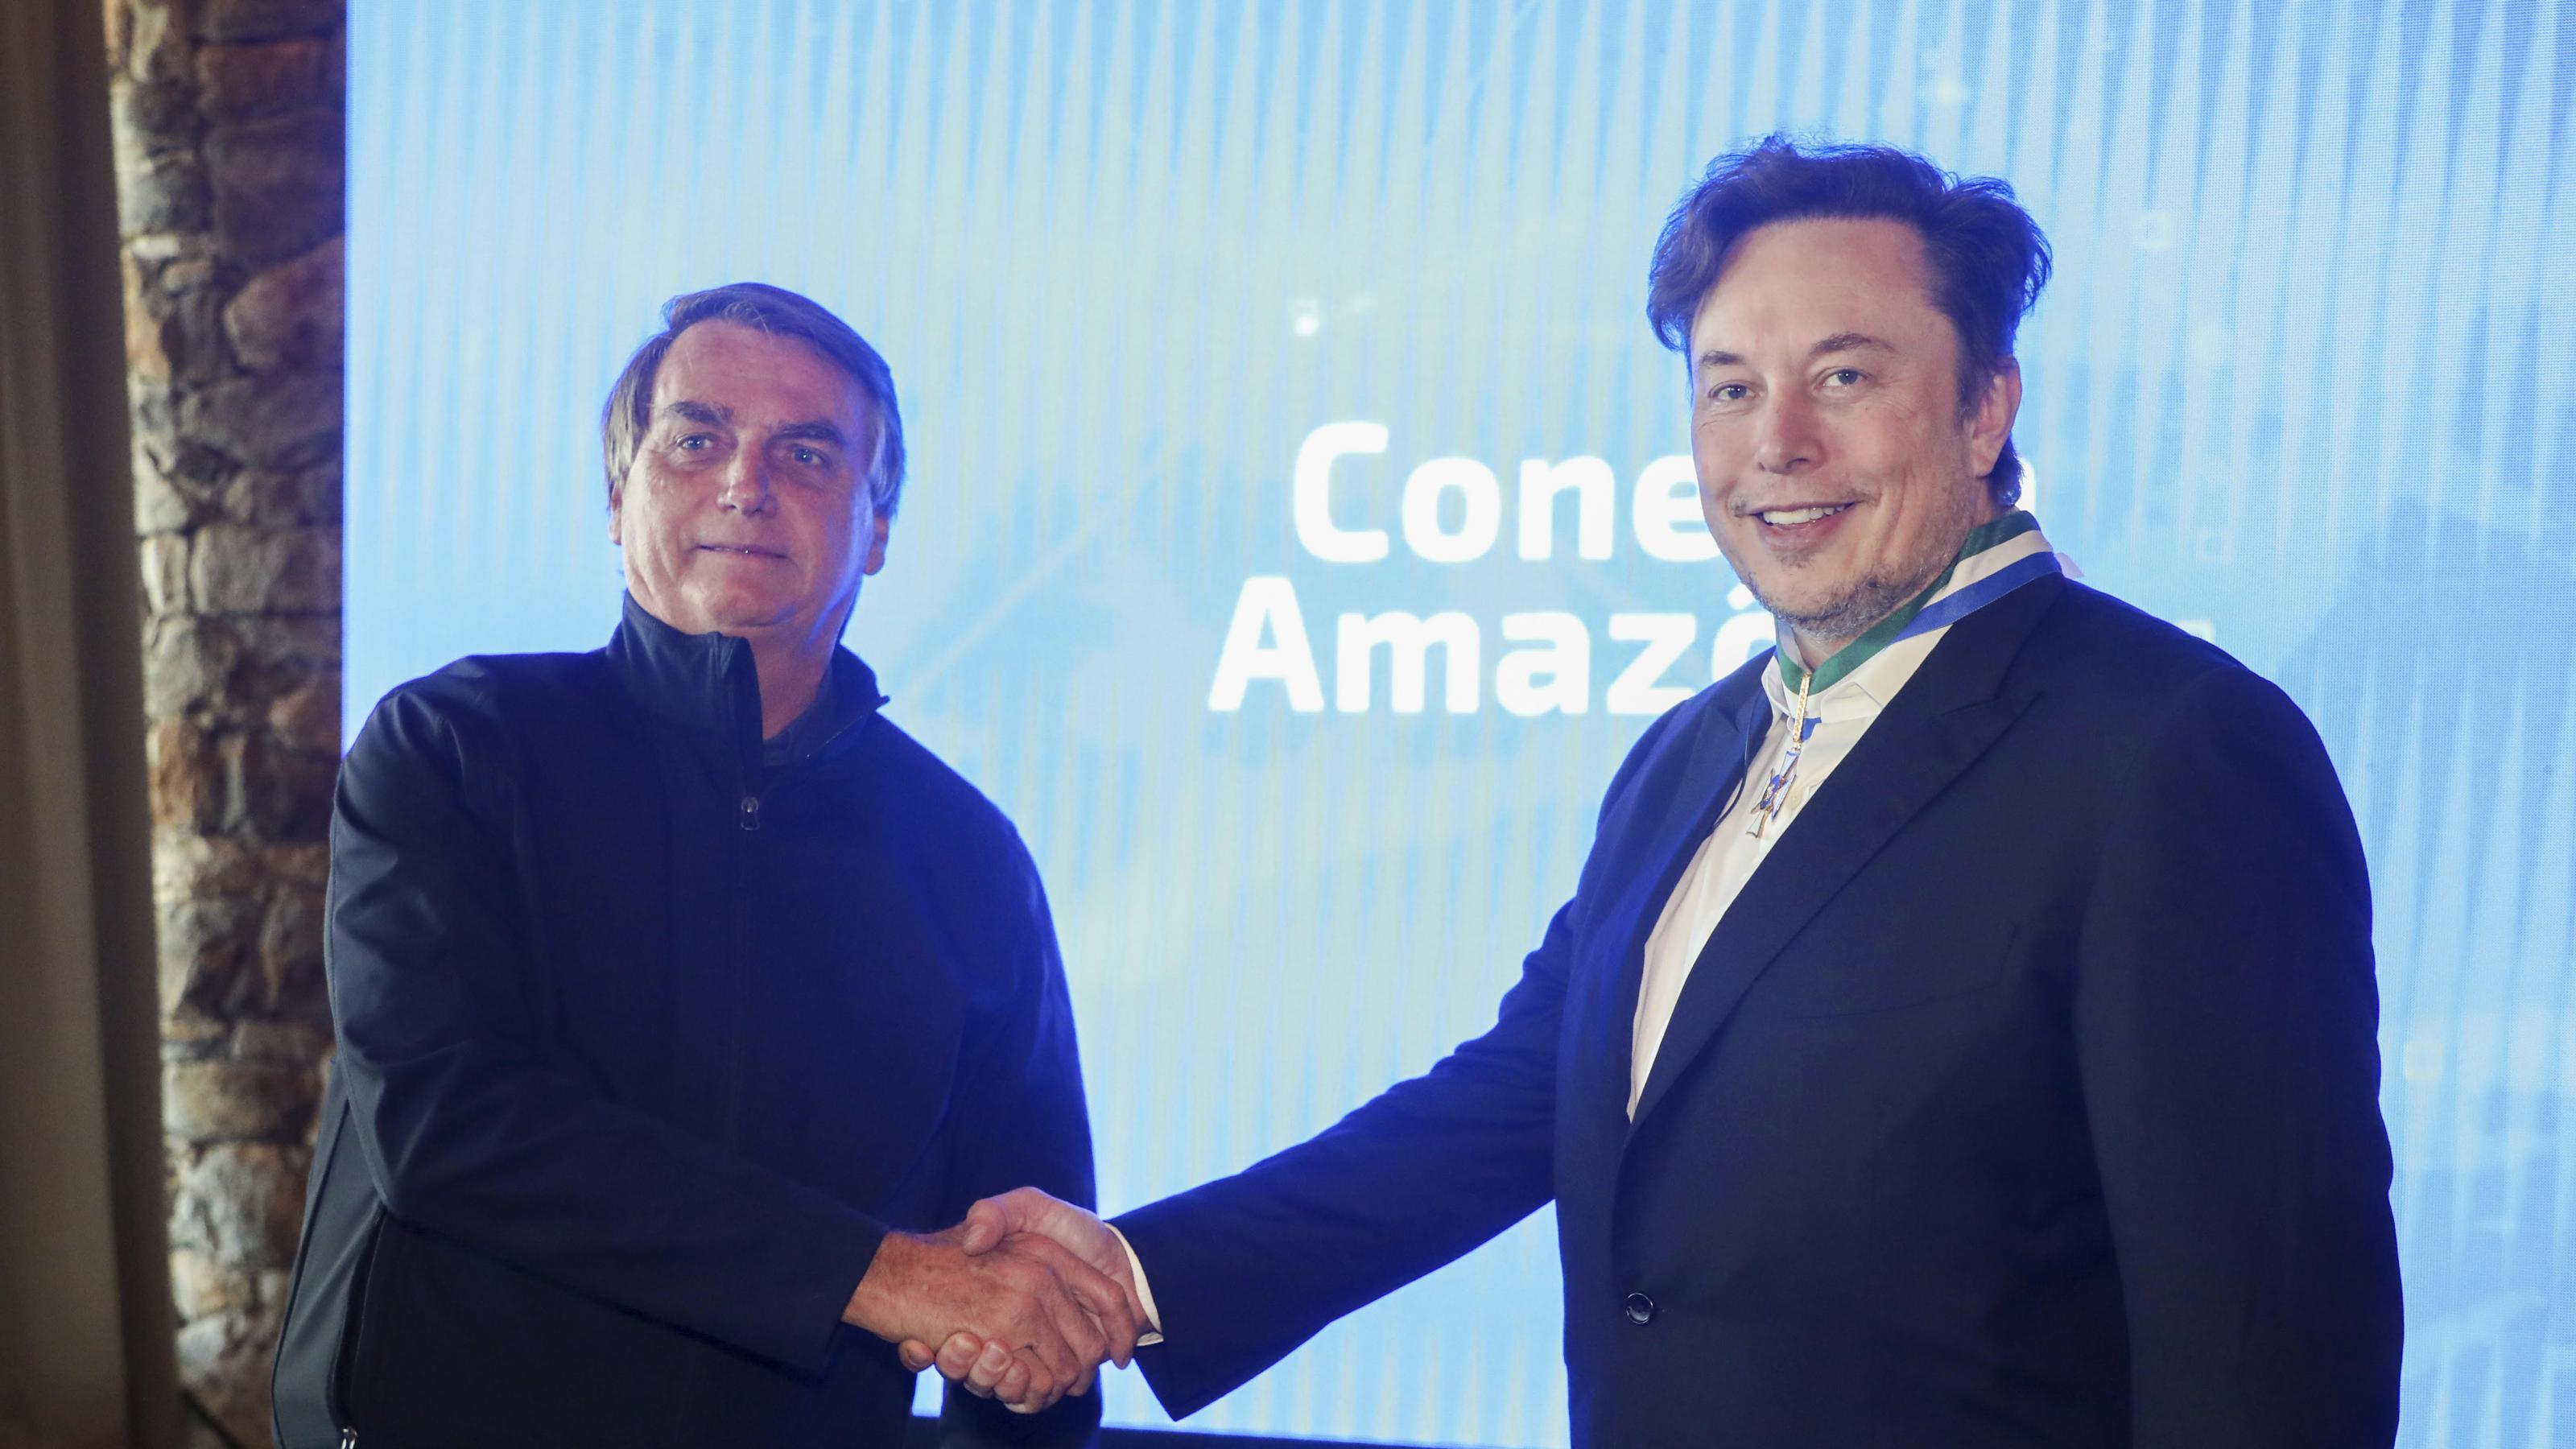 Jair Bolsonaro und Elon Musk geben sich die Hand vor einem blauen Hintergrund in einem Konferenezzentrum.